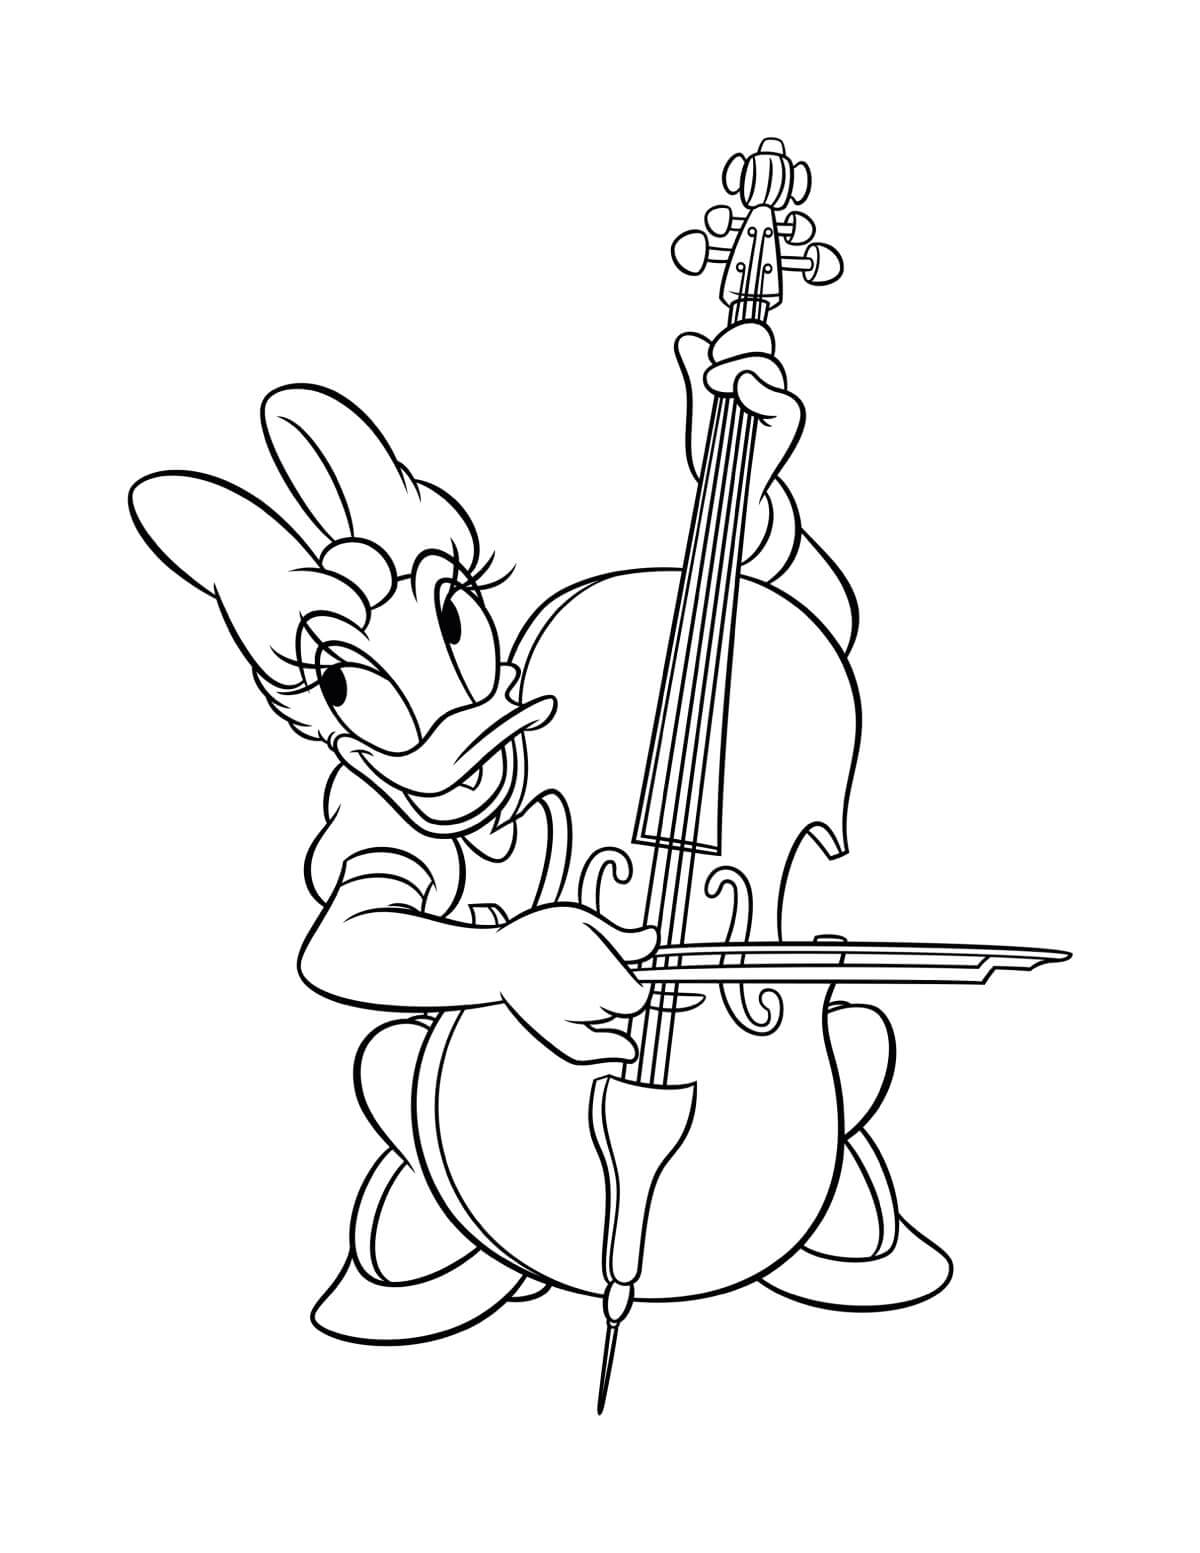 Pato Margarida toca Violino para colorir